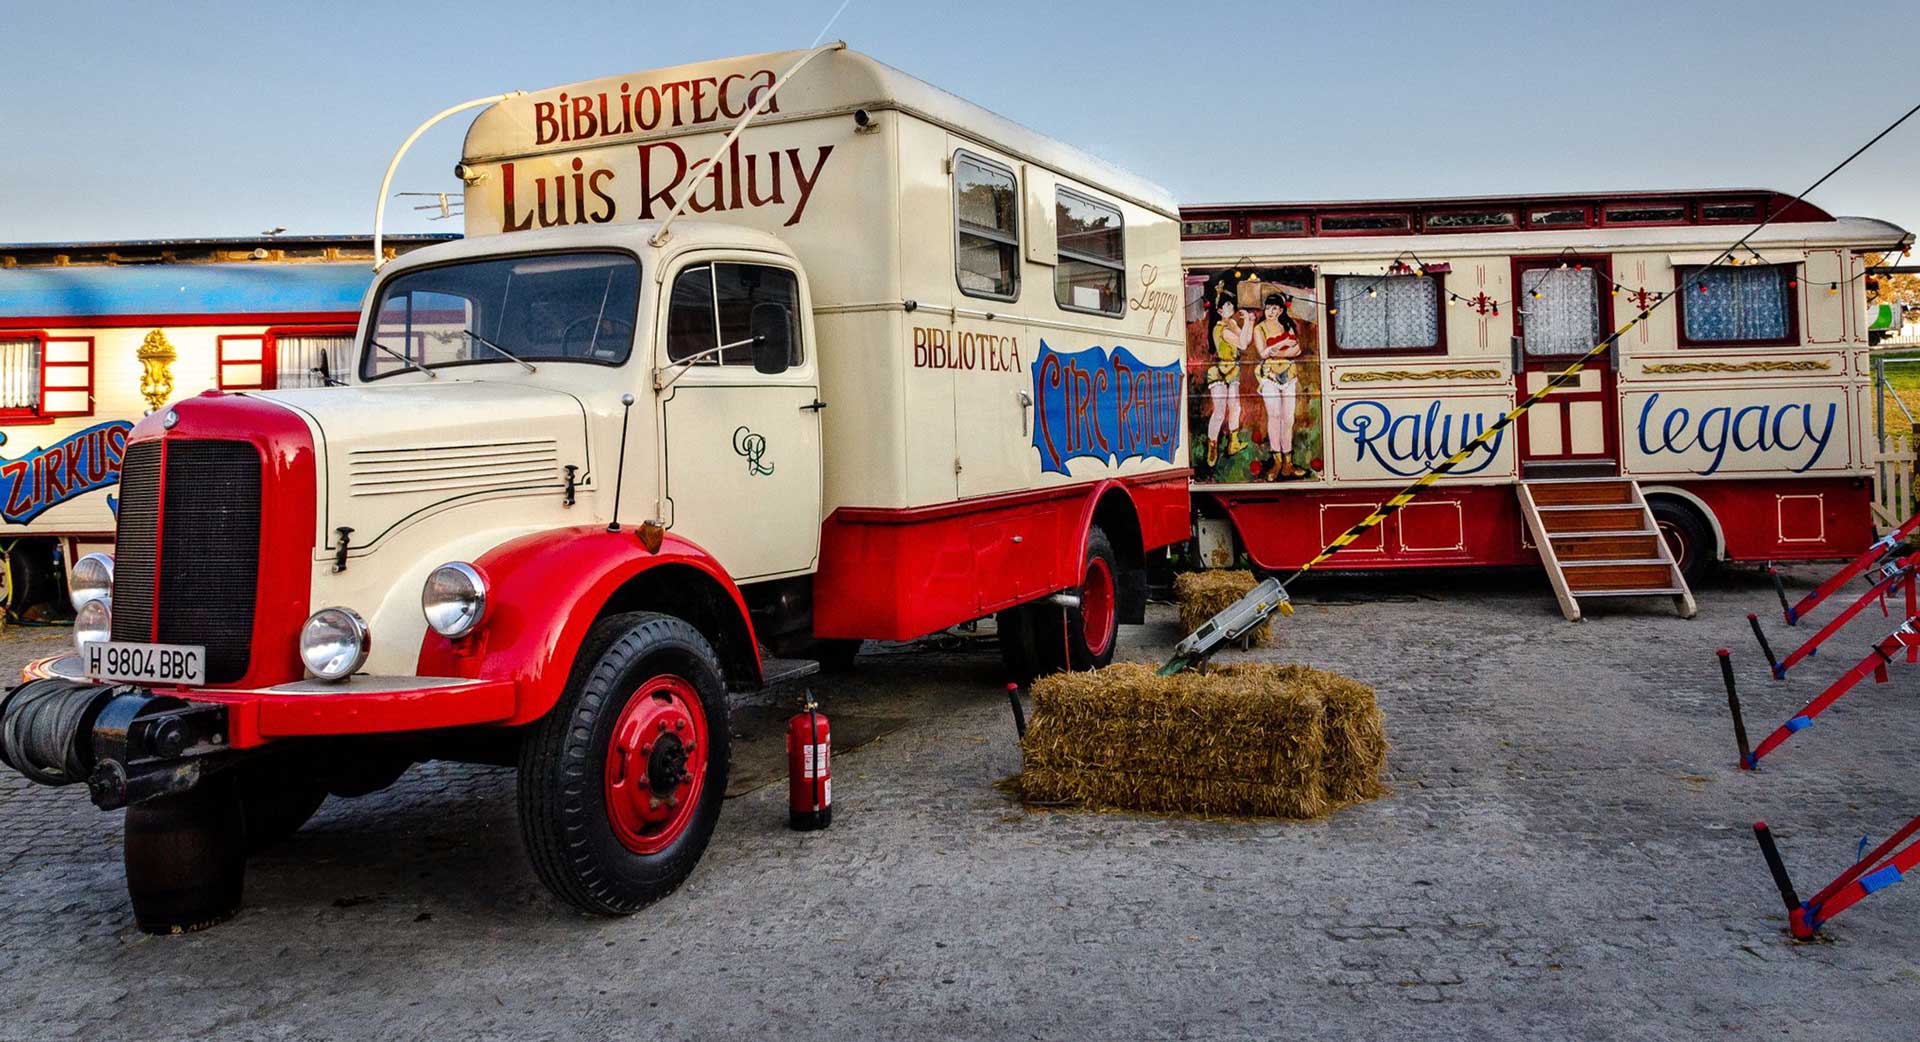 Camiones y caravana pintadas del circo Raluy Legacy. El camión blanco principal es la biblioteca de Luis Raluy